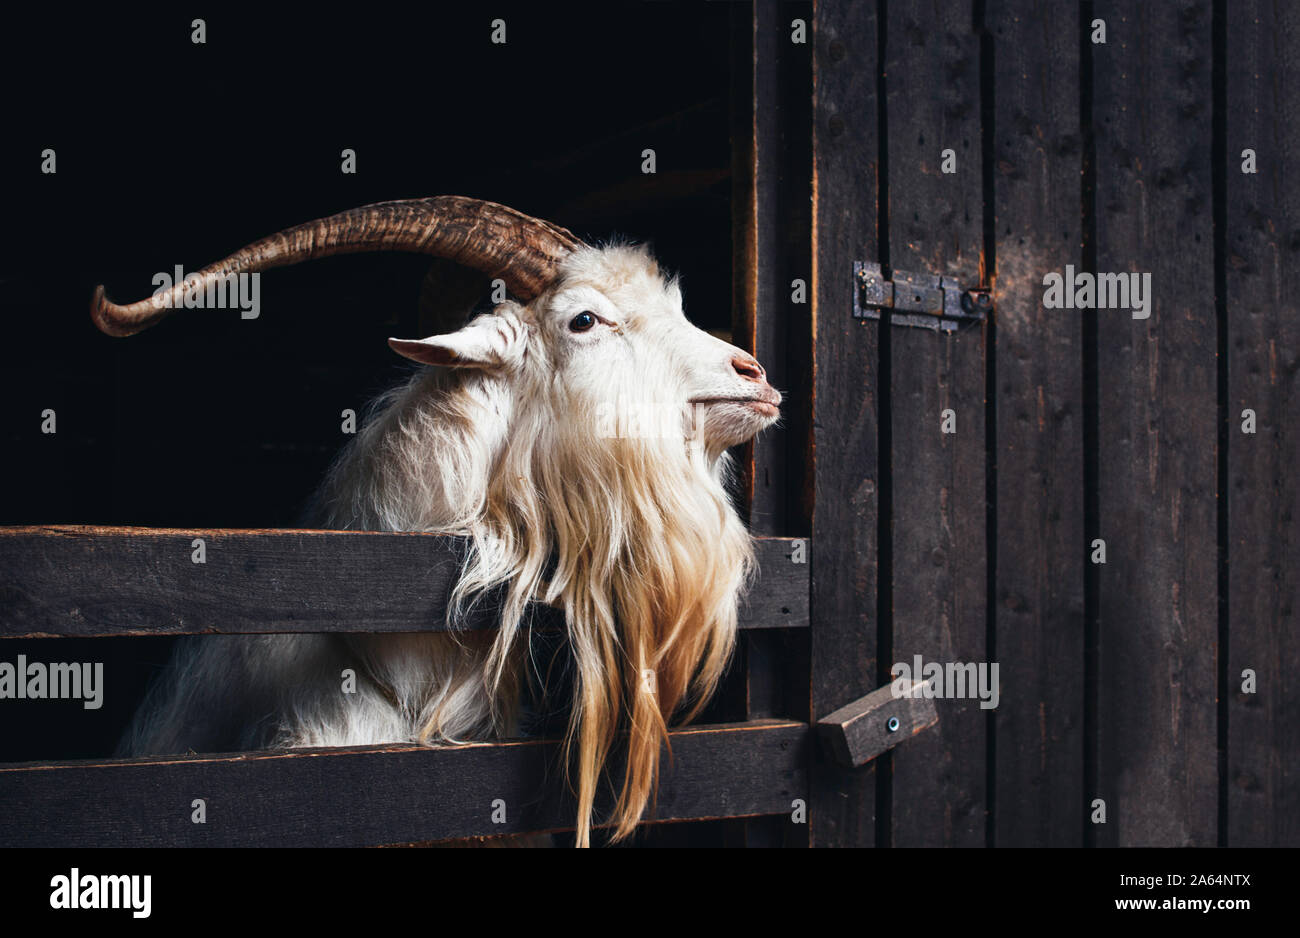 Molto bella capra bianca con lunghe corna e la barba, vive in una fattoria su sfondo scuro. Foto Stock